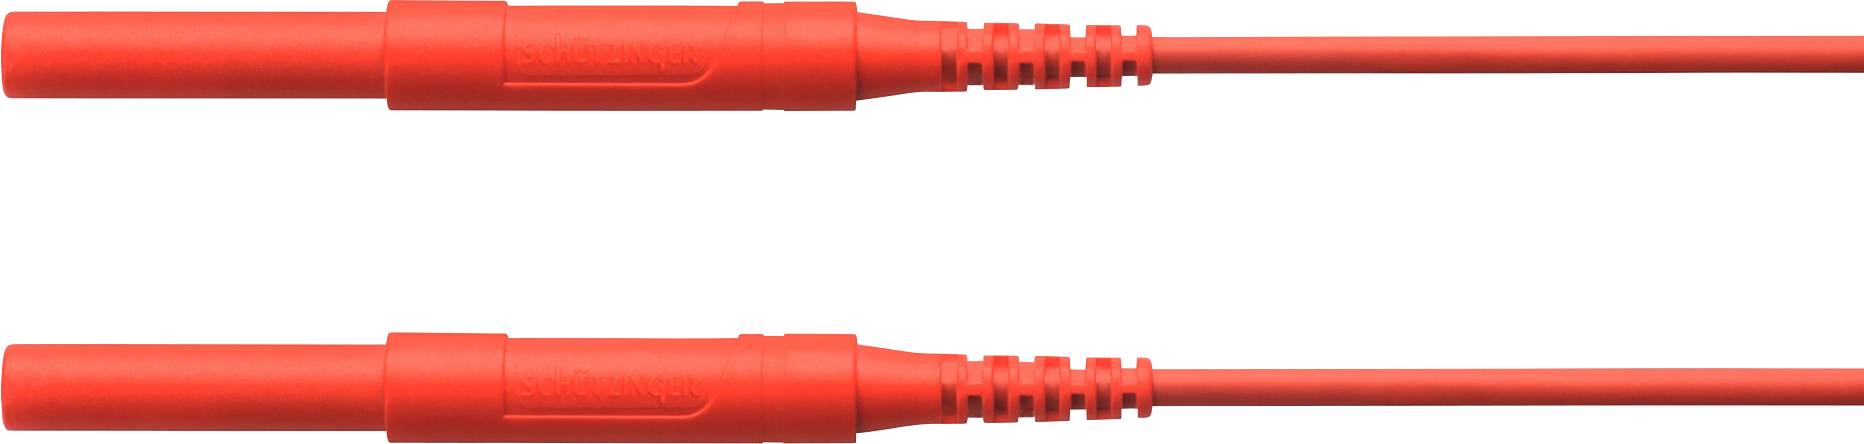 SCHÜTZINGER HSPL 8568 / AWG16 / 200 / RT Sicherheits-Messleitung [Stecker 4 mm - Stecker 4 mm]